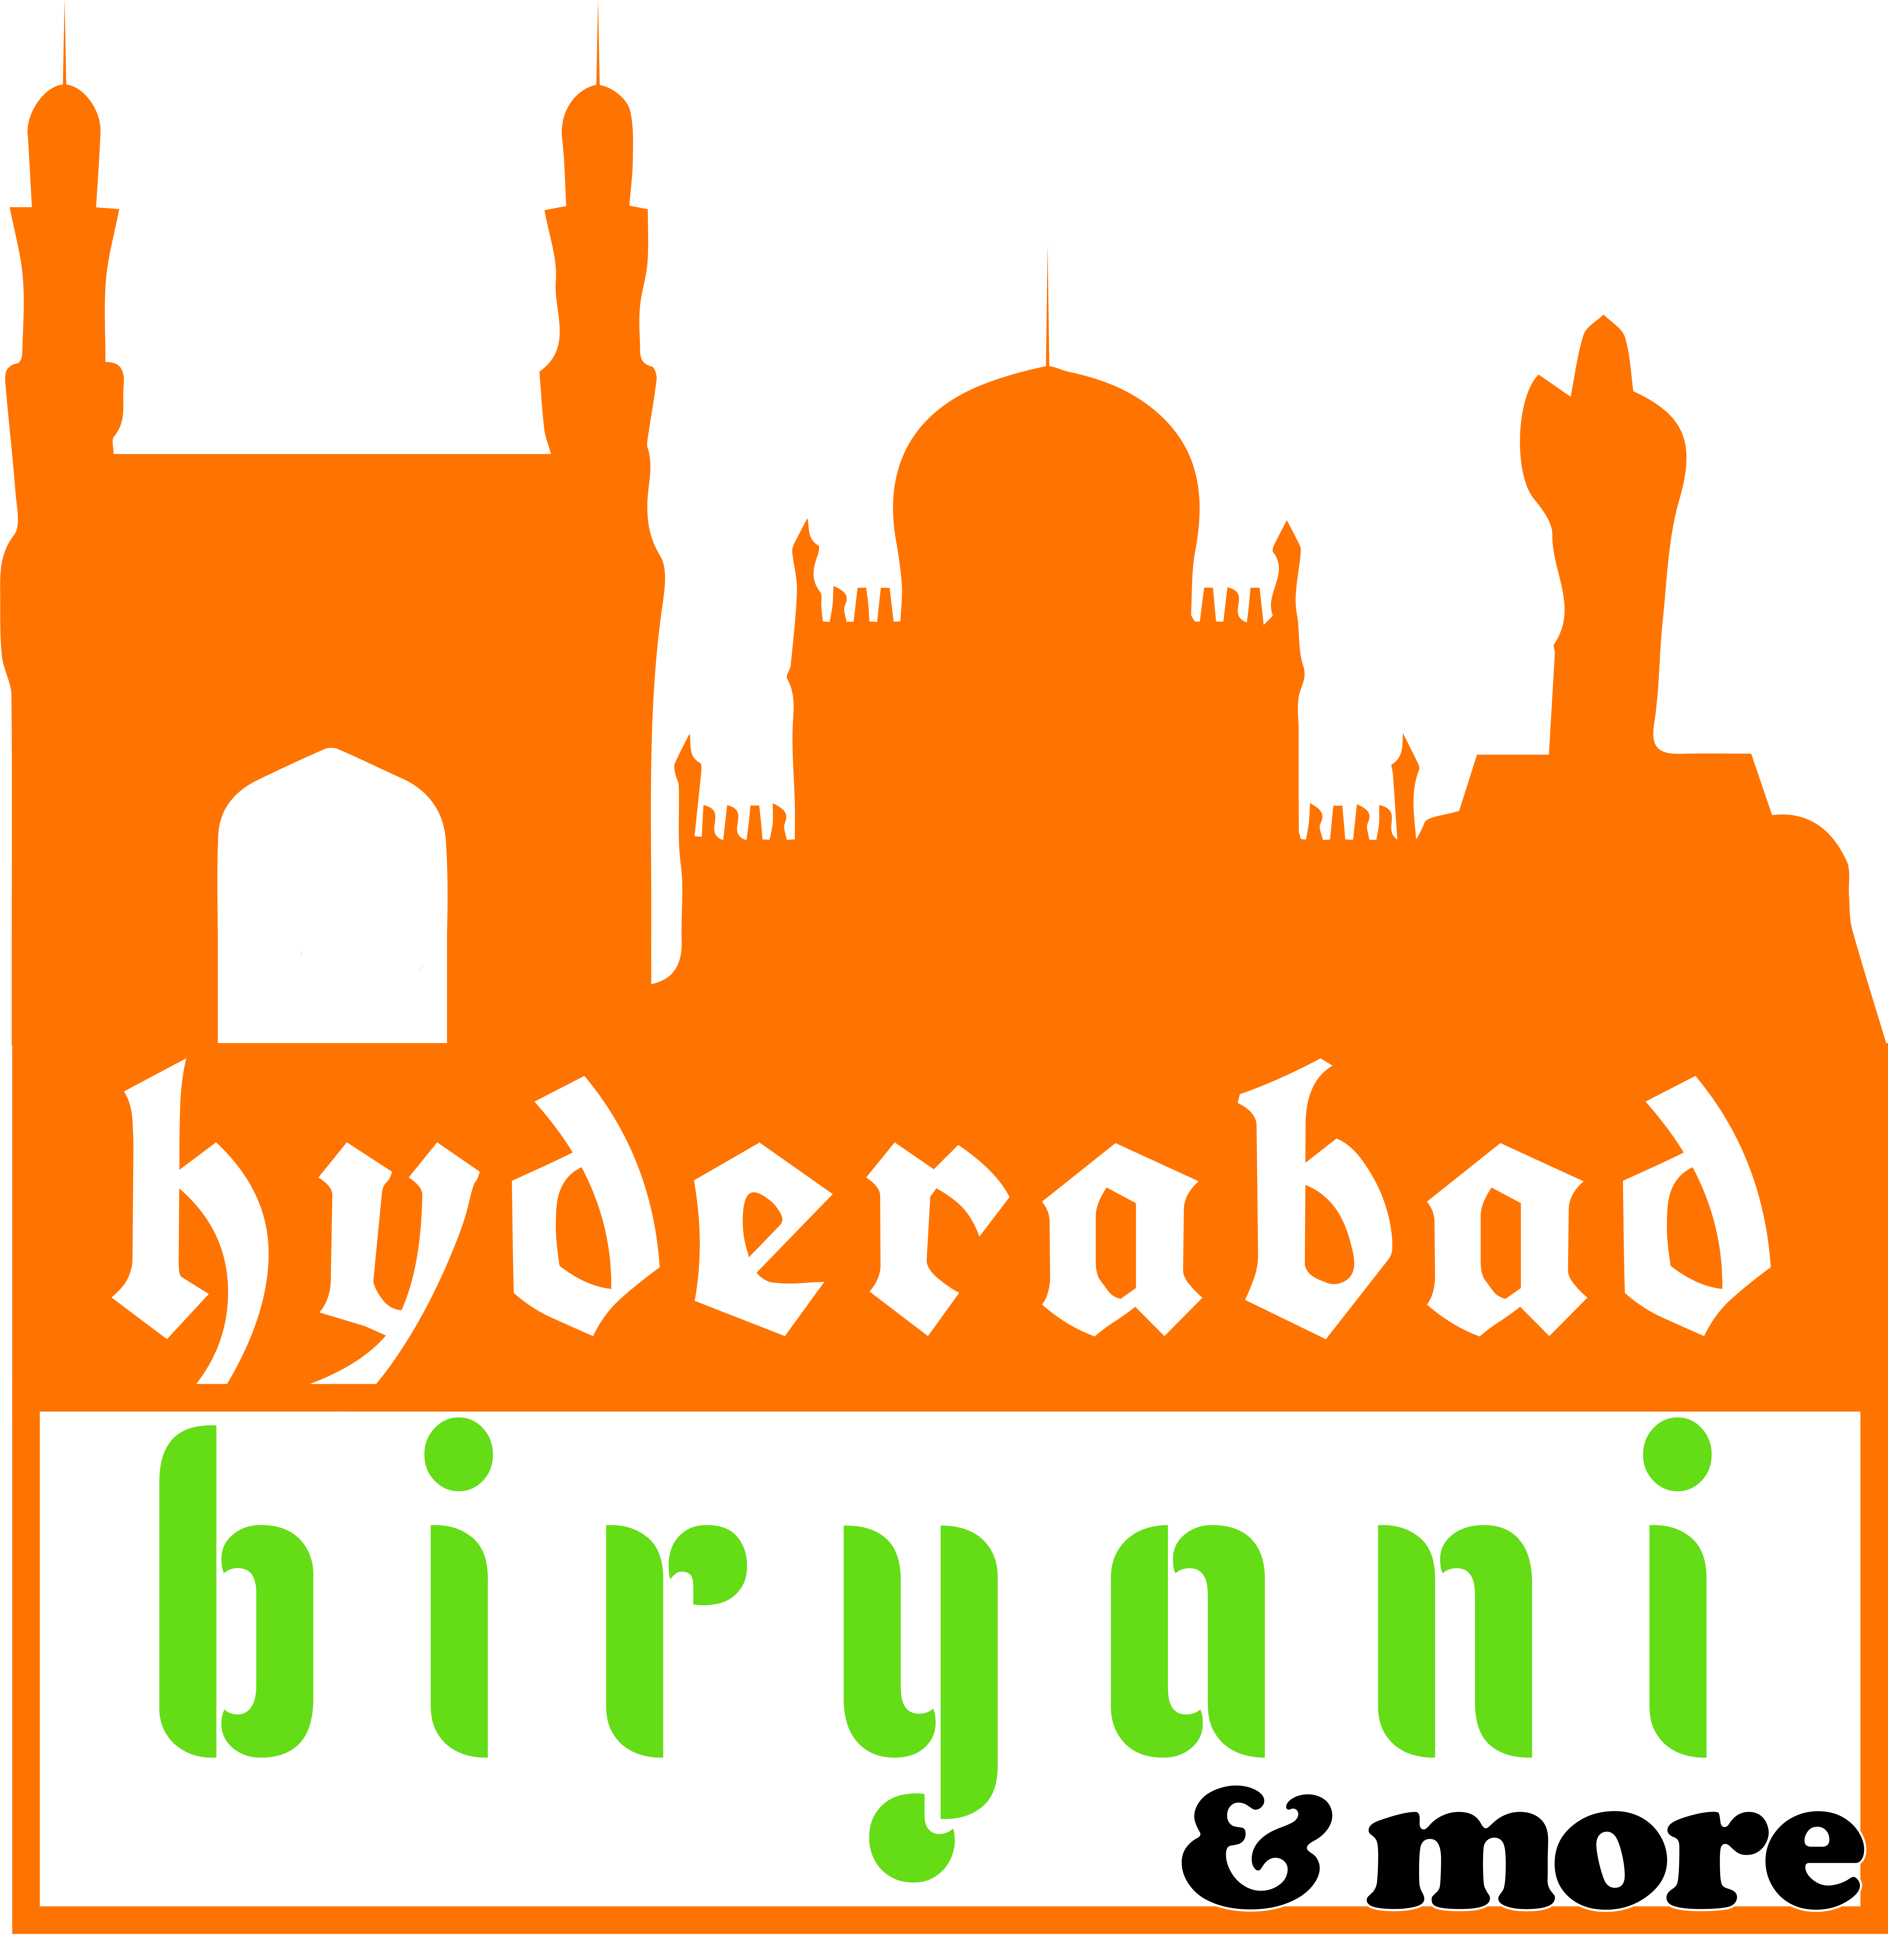 Hyderabad Biryanis & More